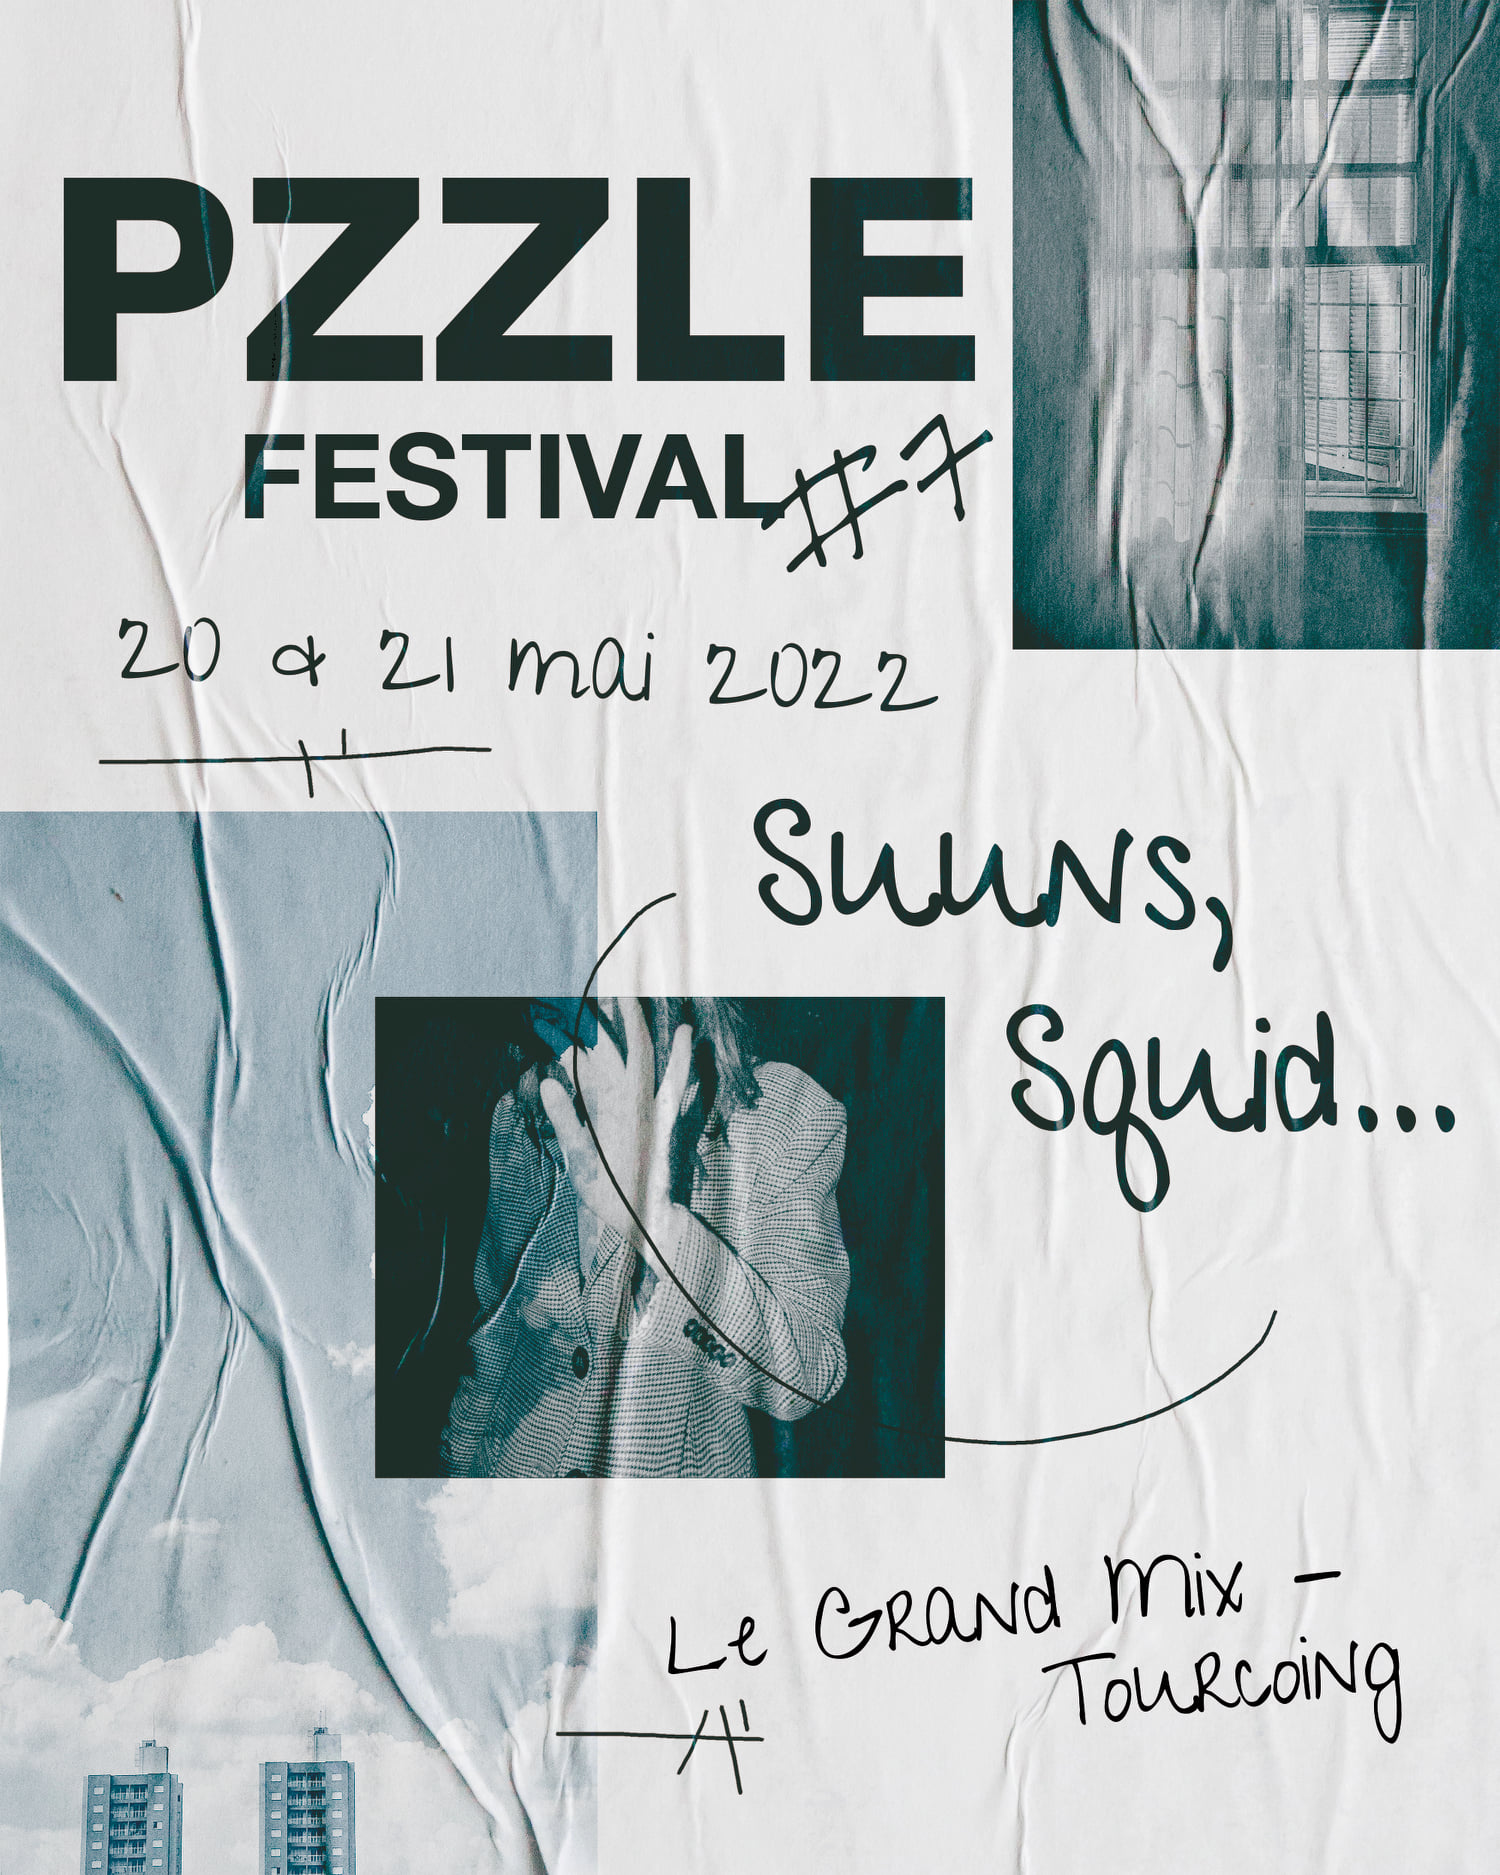 PZZLE festival